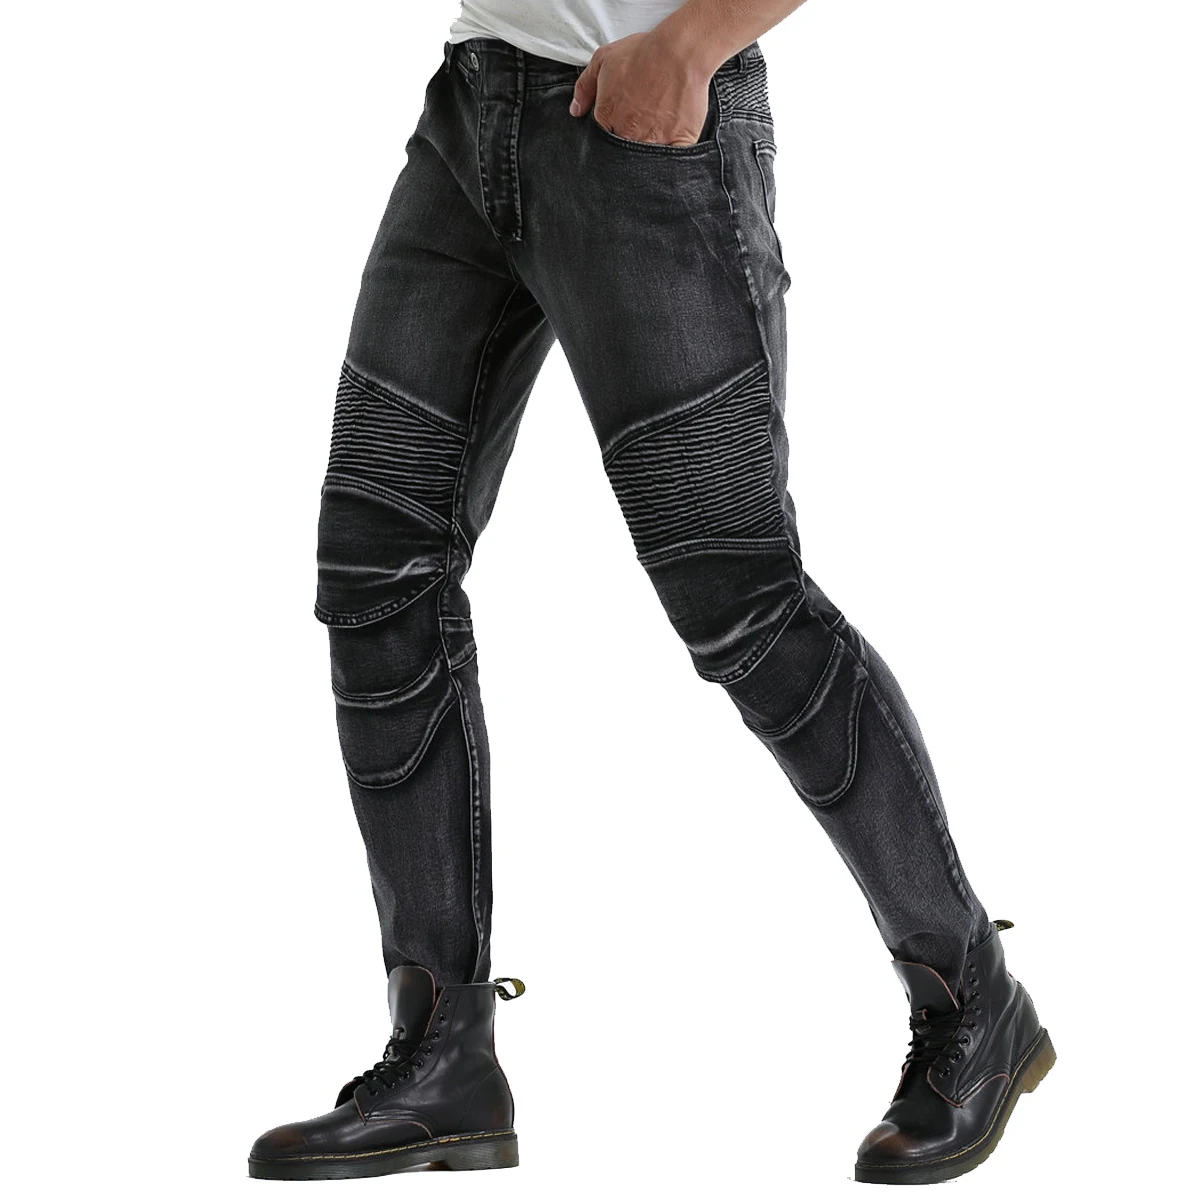 Байкерские джинсы для мужчин мотоцикл брюки для верховой езды с 4 х обновления колено набедренная защита внедорожных грязи велосипед панцири защитные штаны